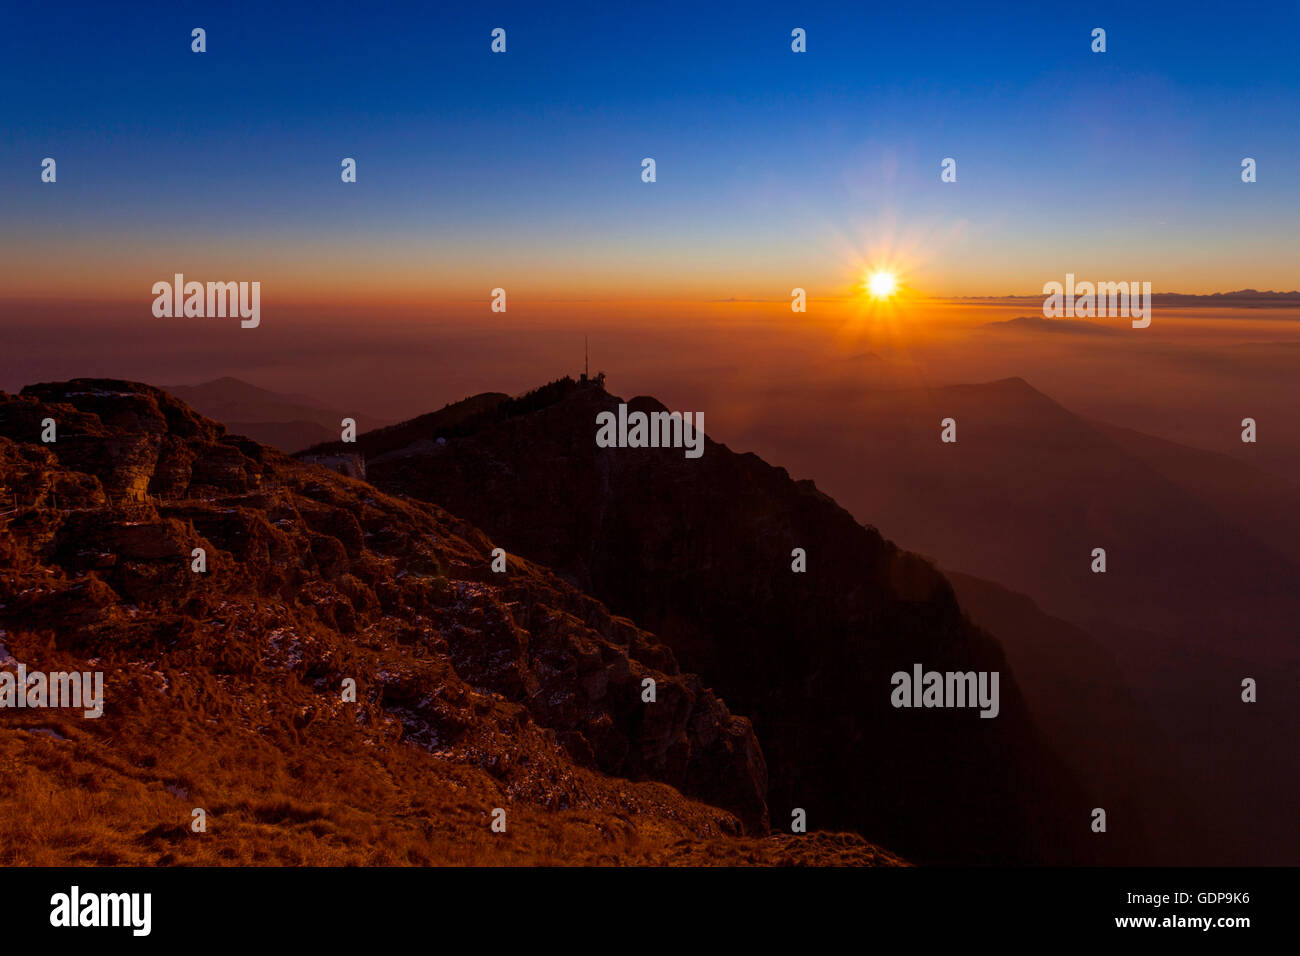 La silhouette surélevée avec paysage au coucher du soleil, le brouillard de la vallée Monte Generoso, Tessin, Suisse Banque D'Images